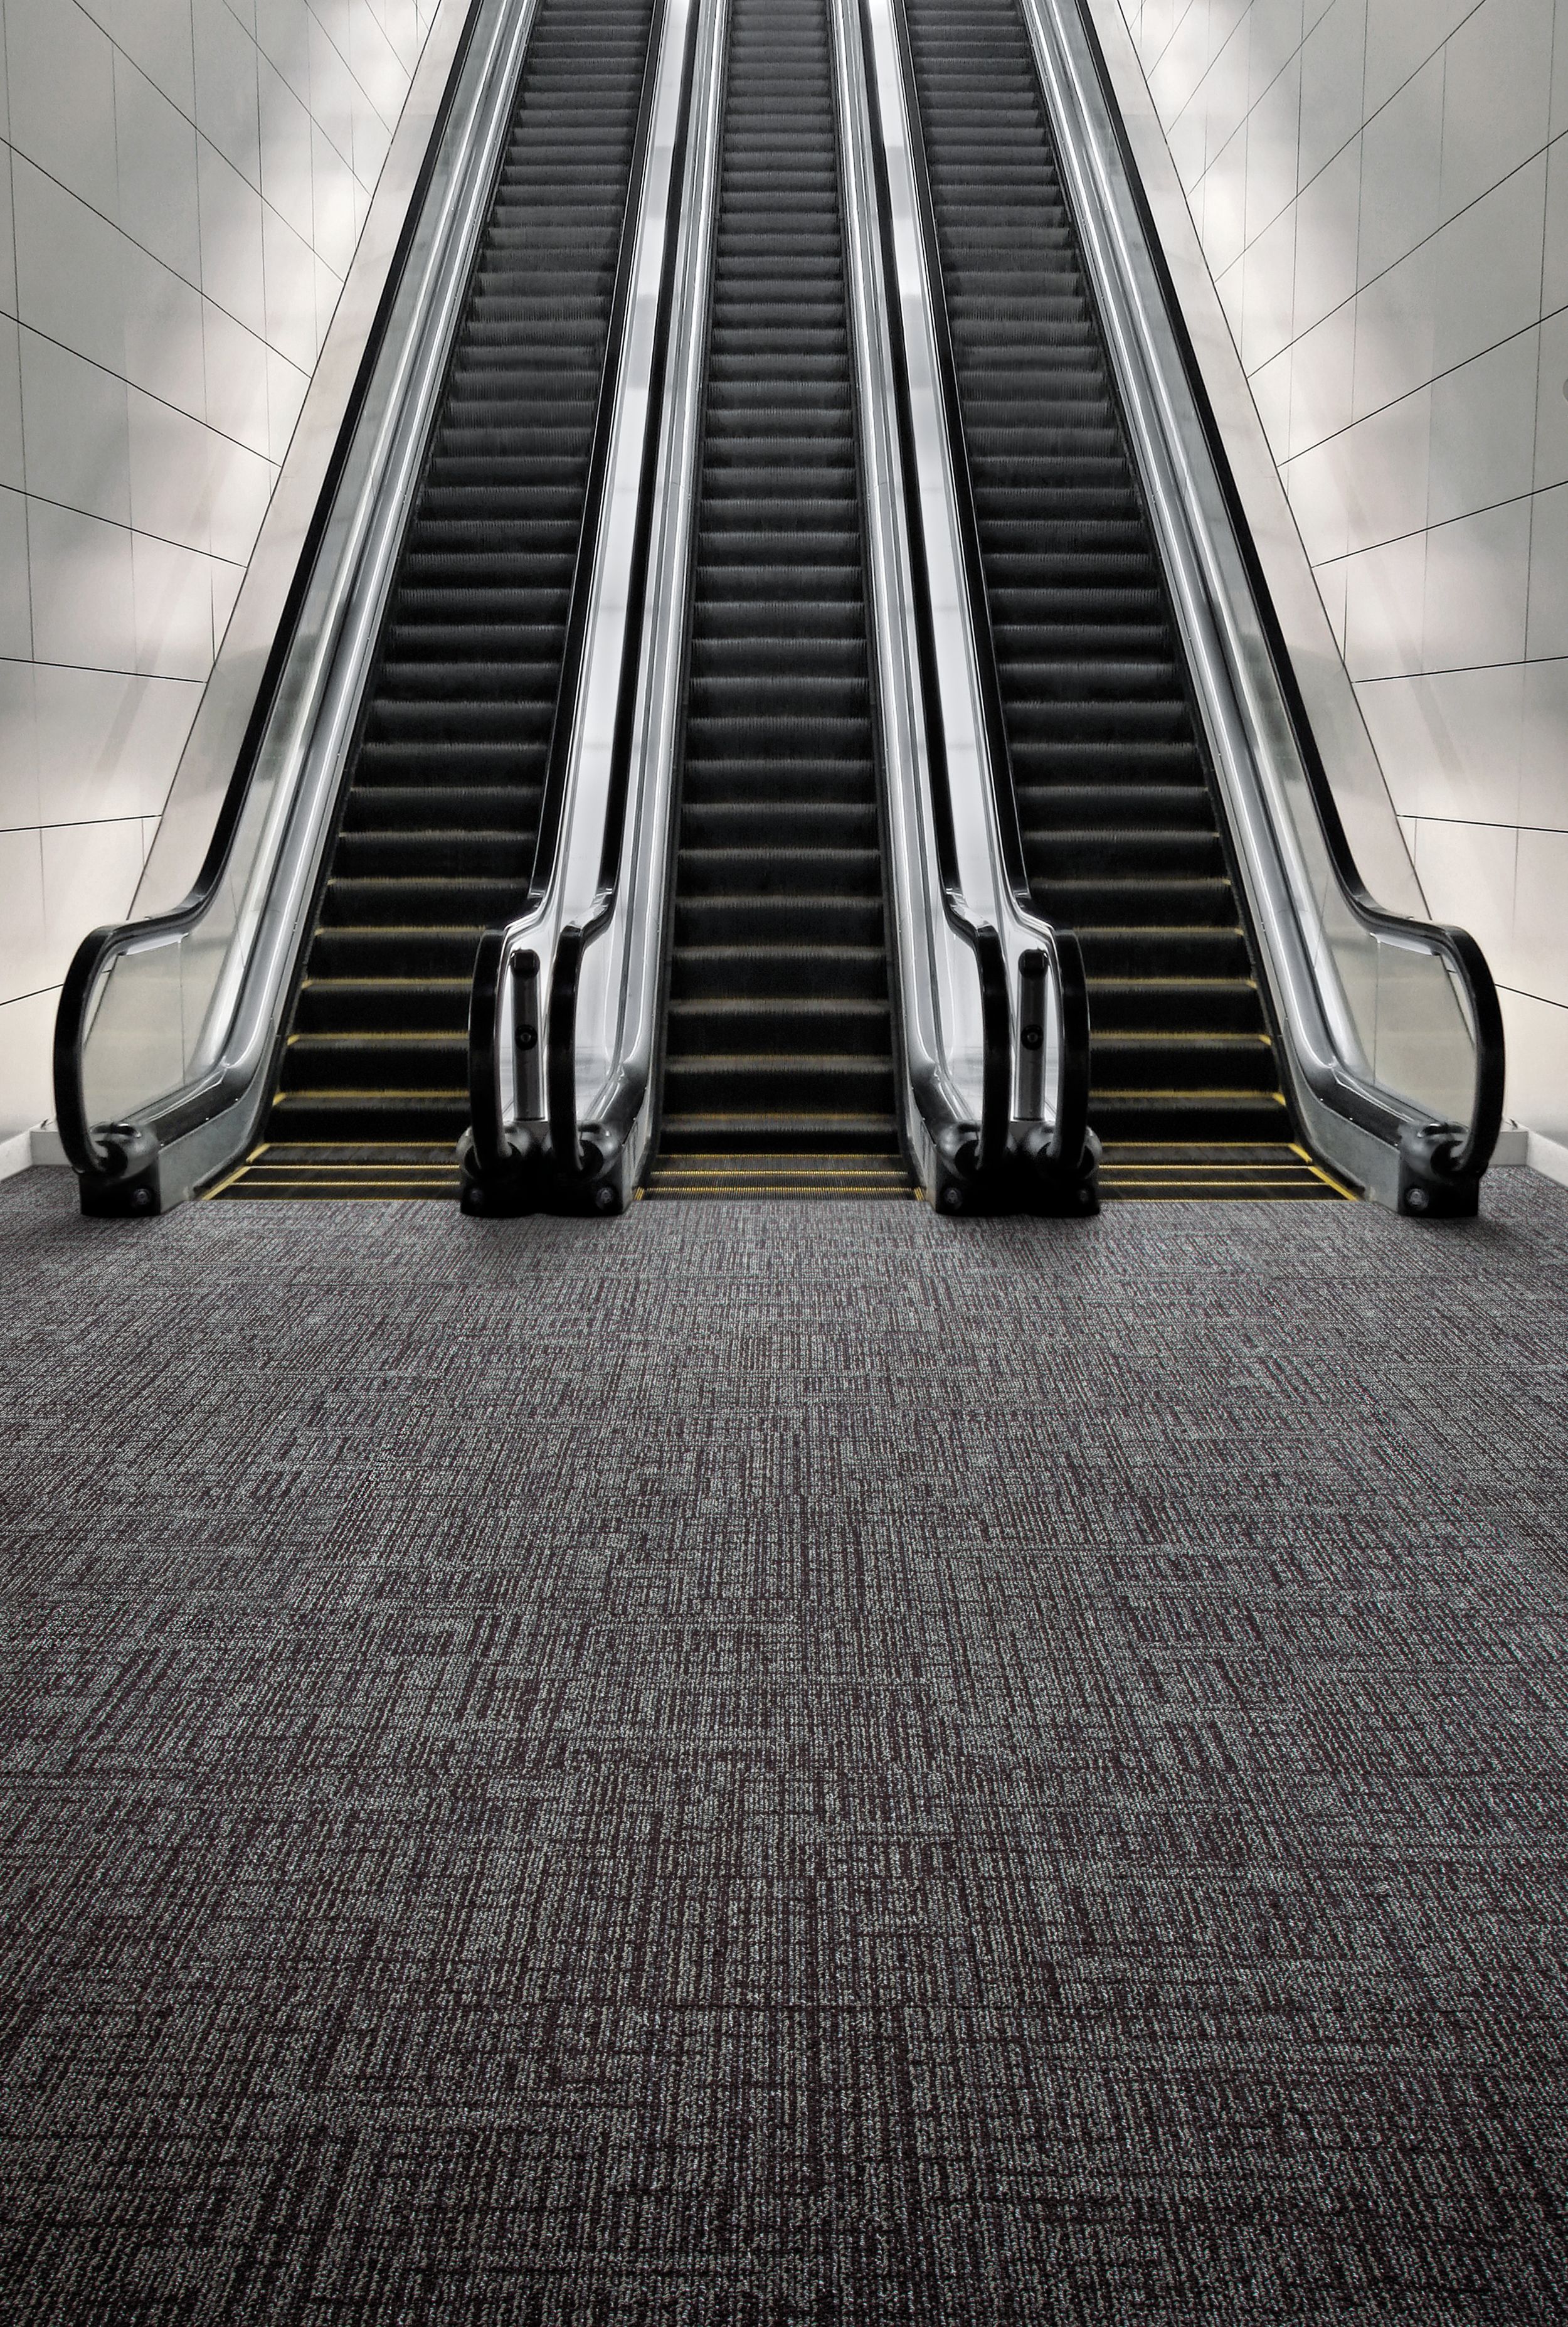 Interface SR899 carpet tile with escalator imagen número 4